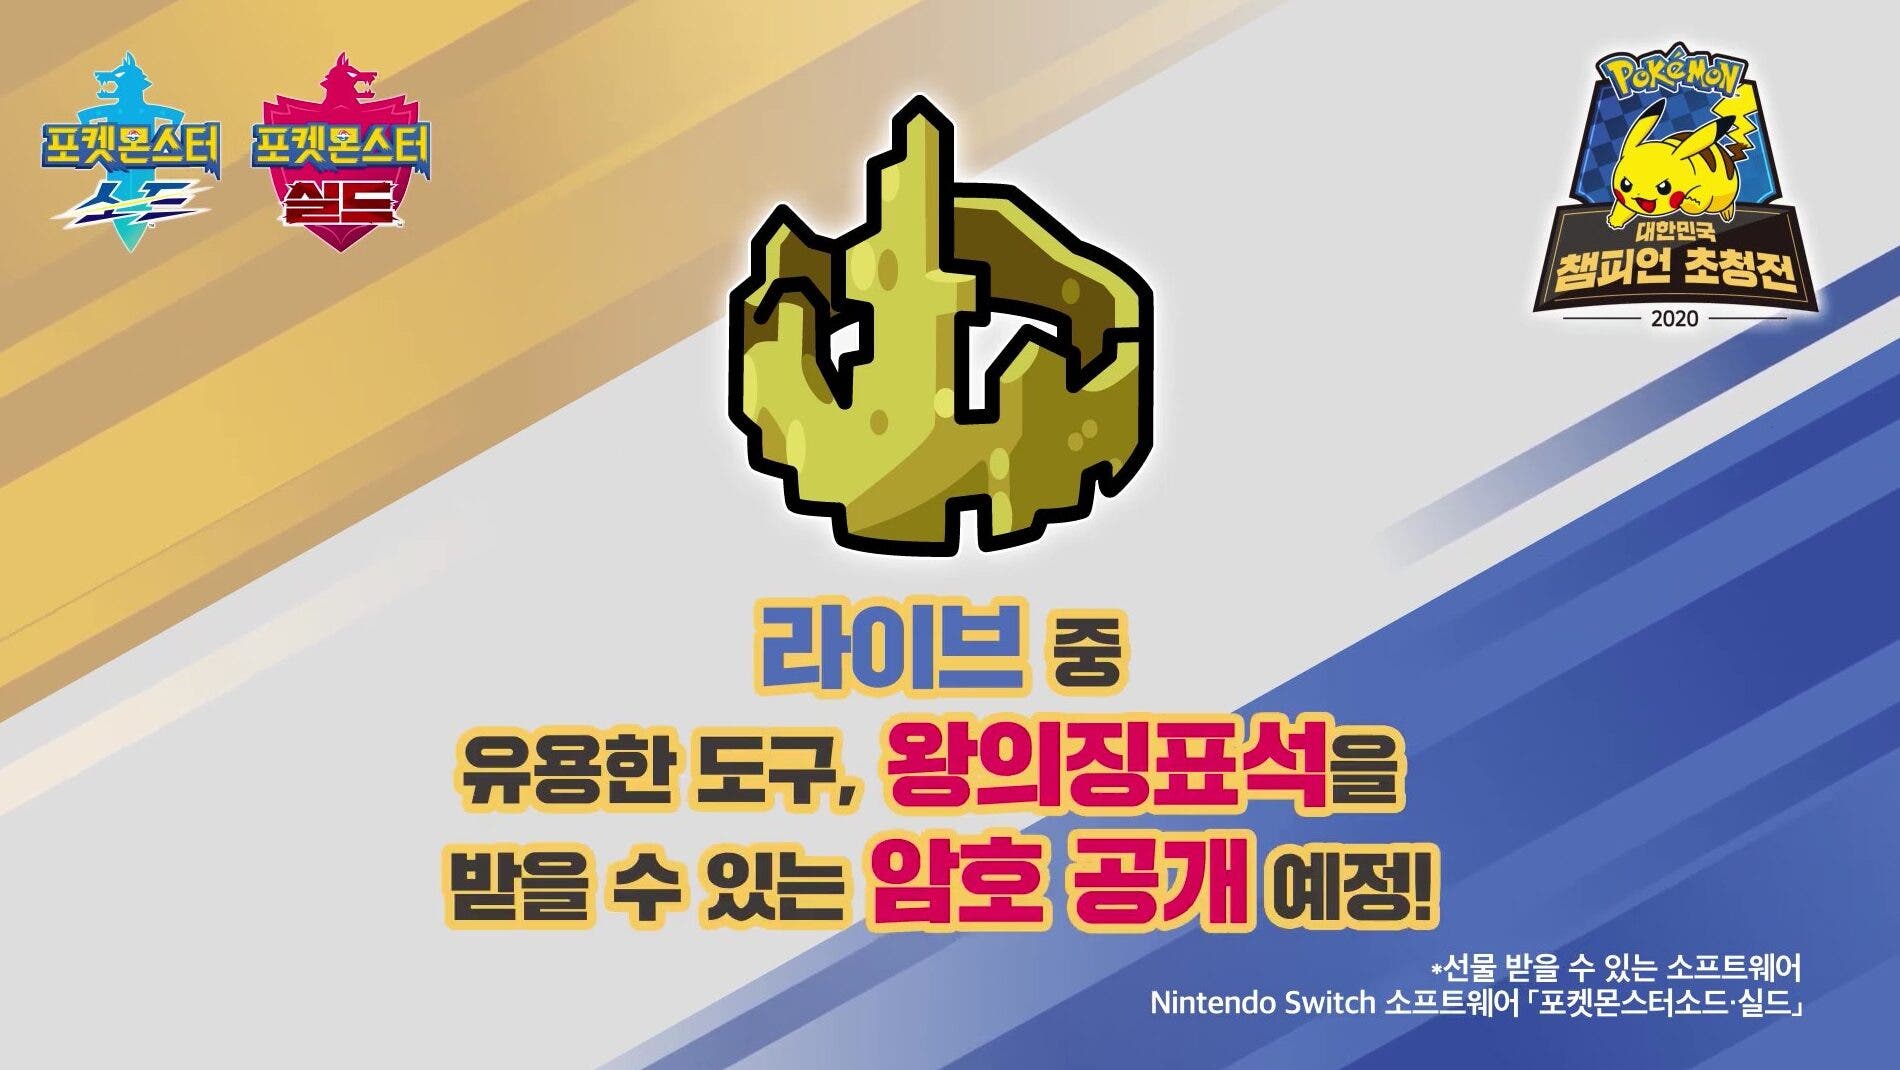 Una Roca del rey será distribuida mediante un código de Regalo misterioso en el streaming del Torneo Invitacional de Pokémon Corea